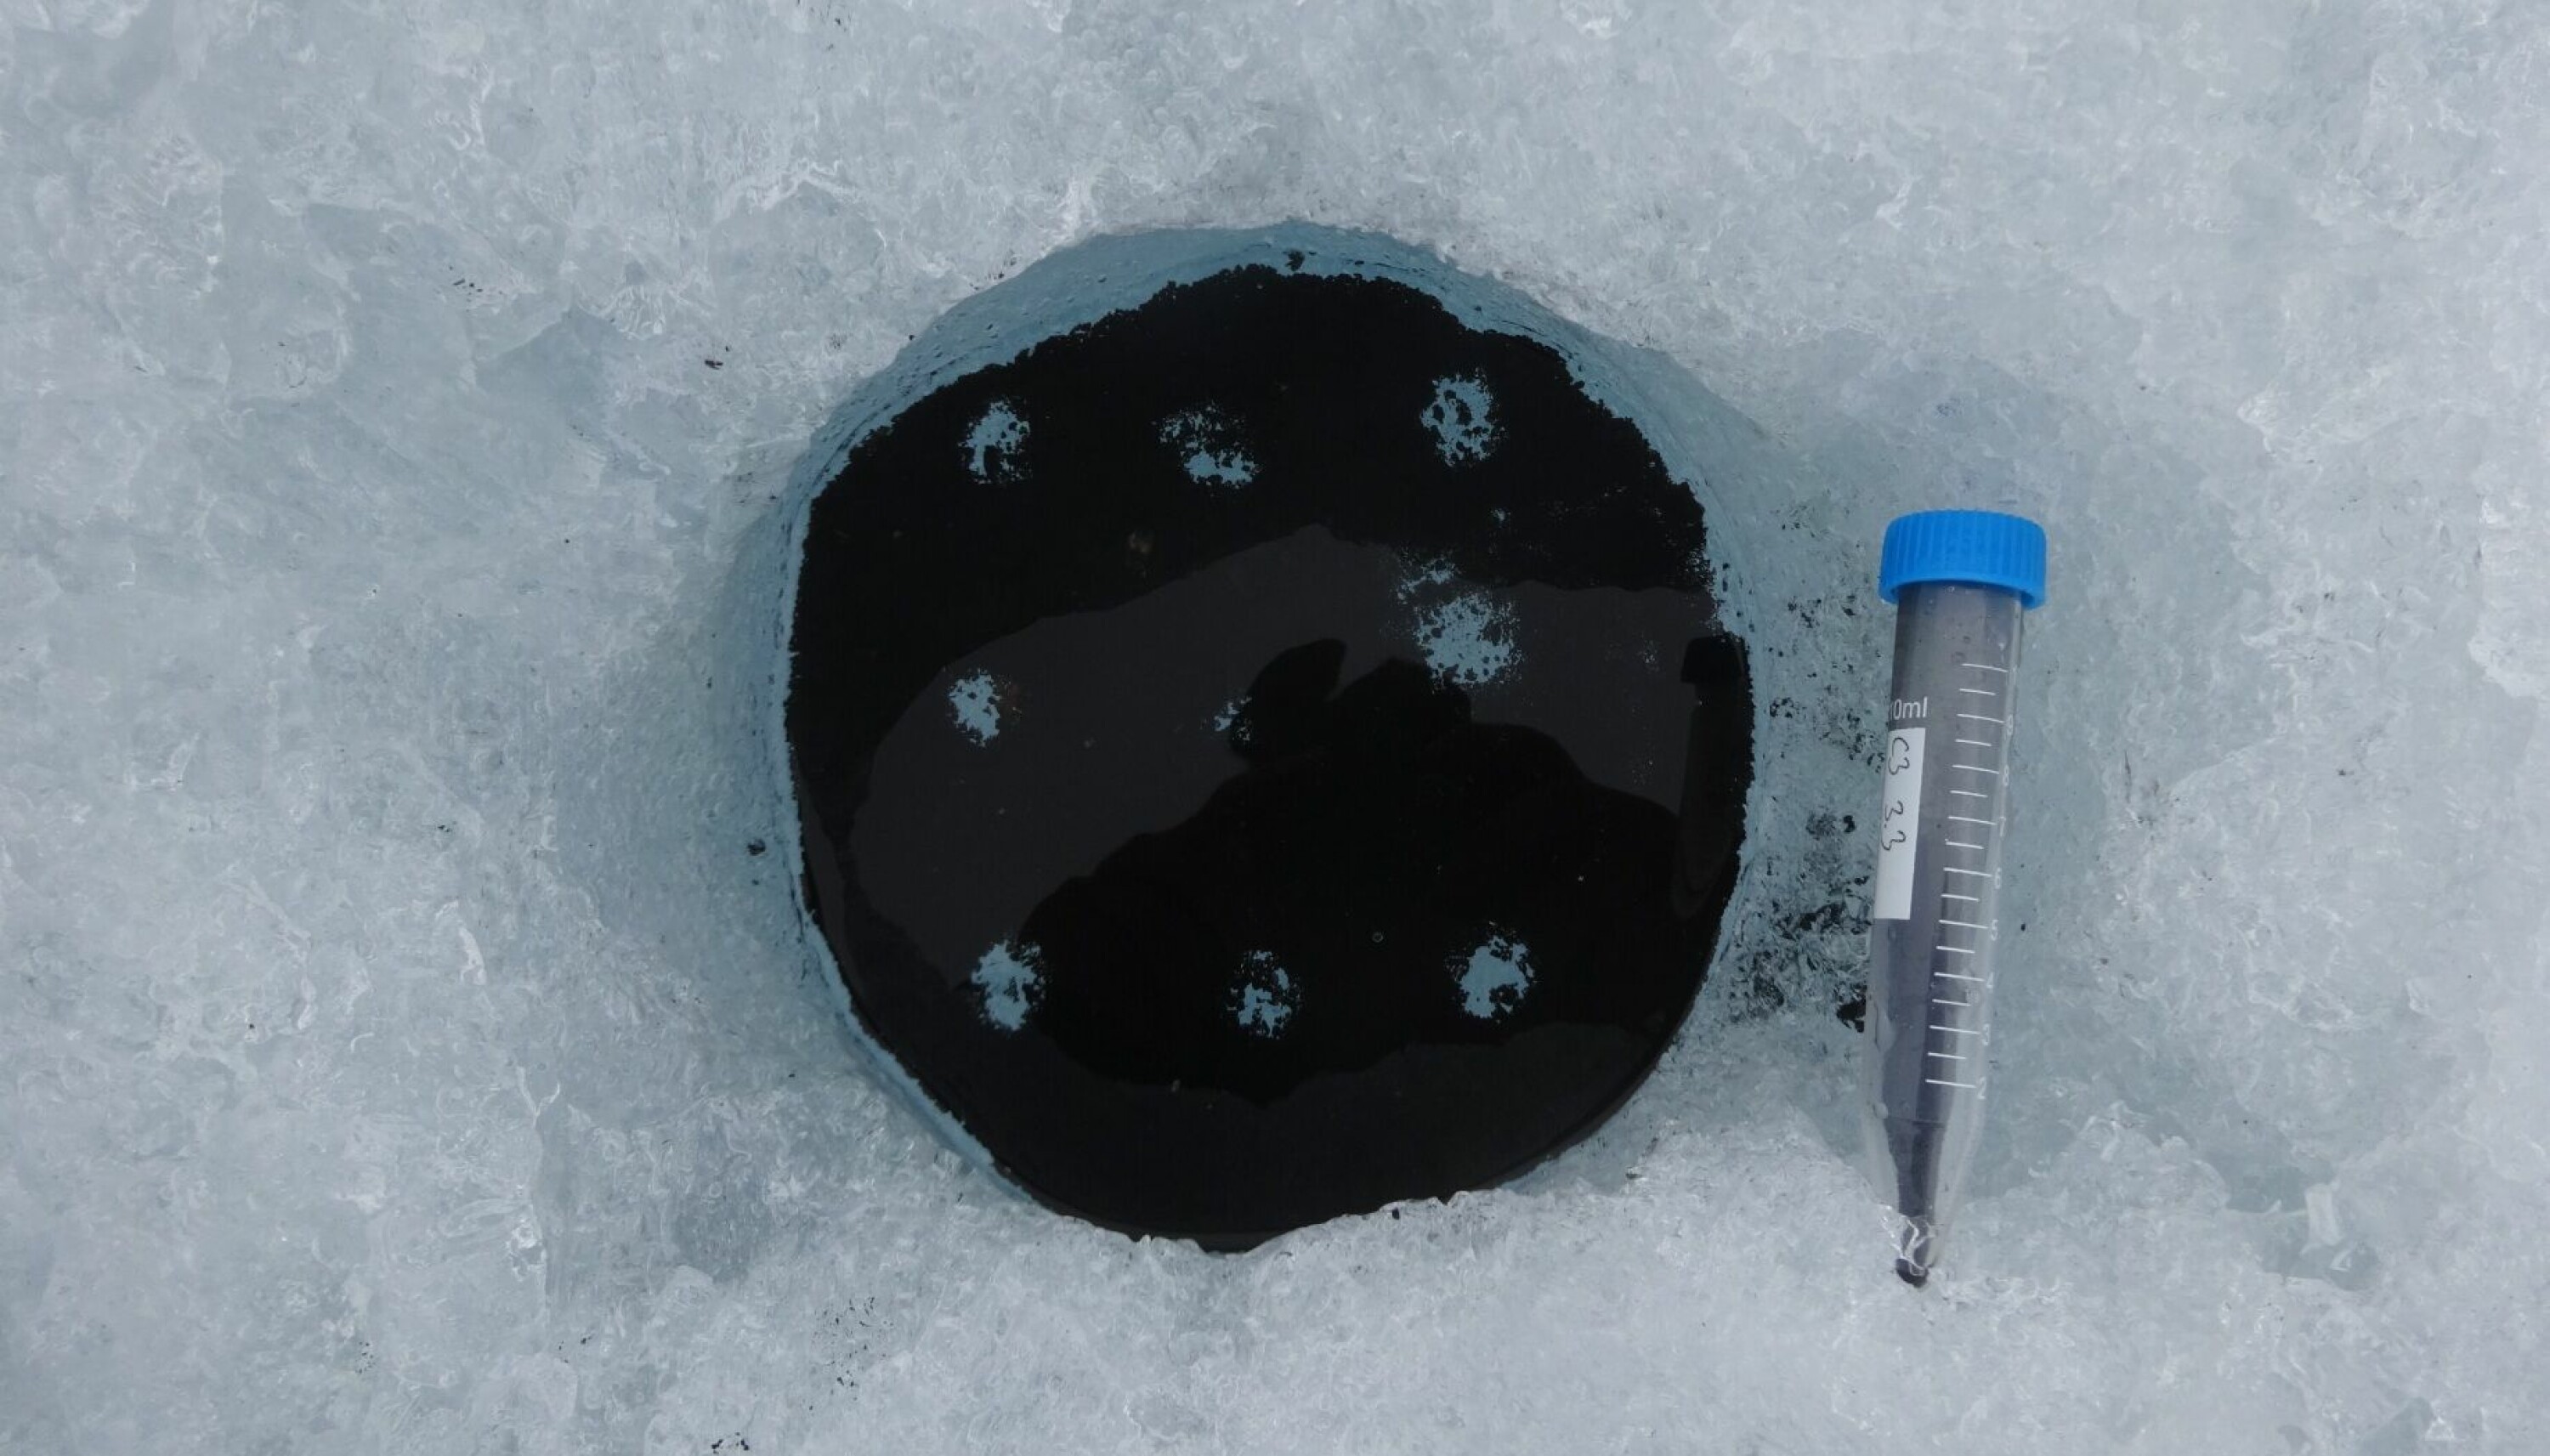 Forskerne tok prøver av tolv forskjellige groper med krykonitt på Blåisen.